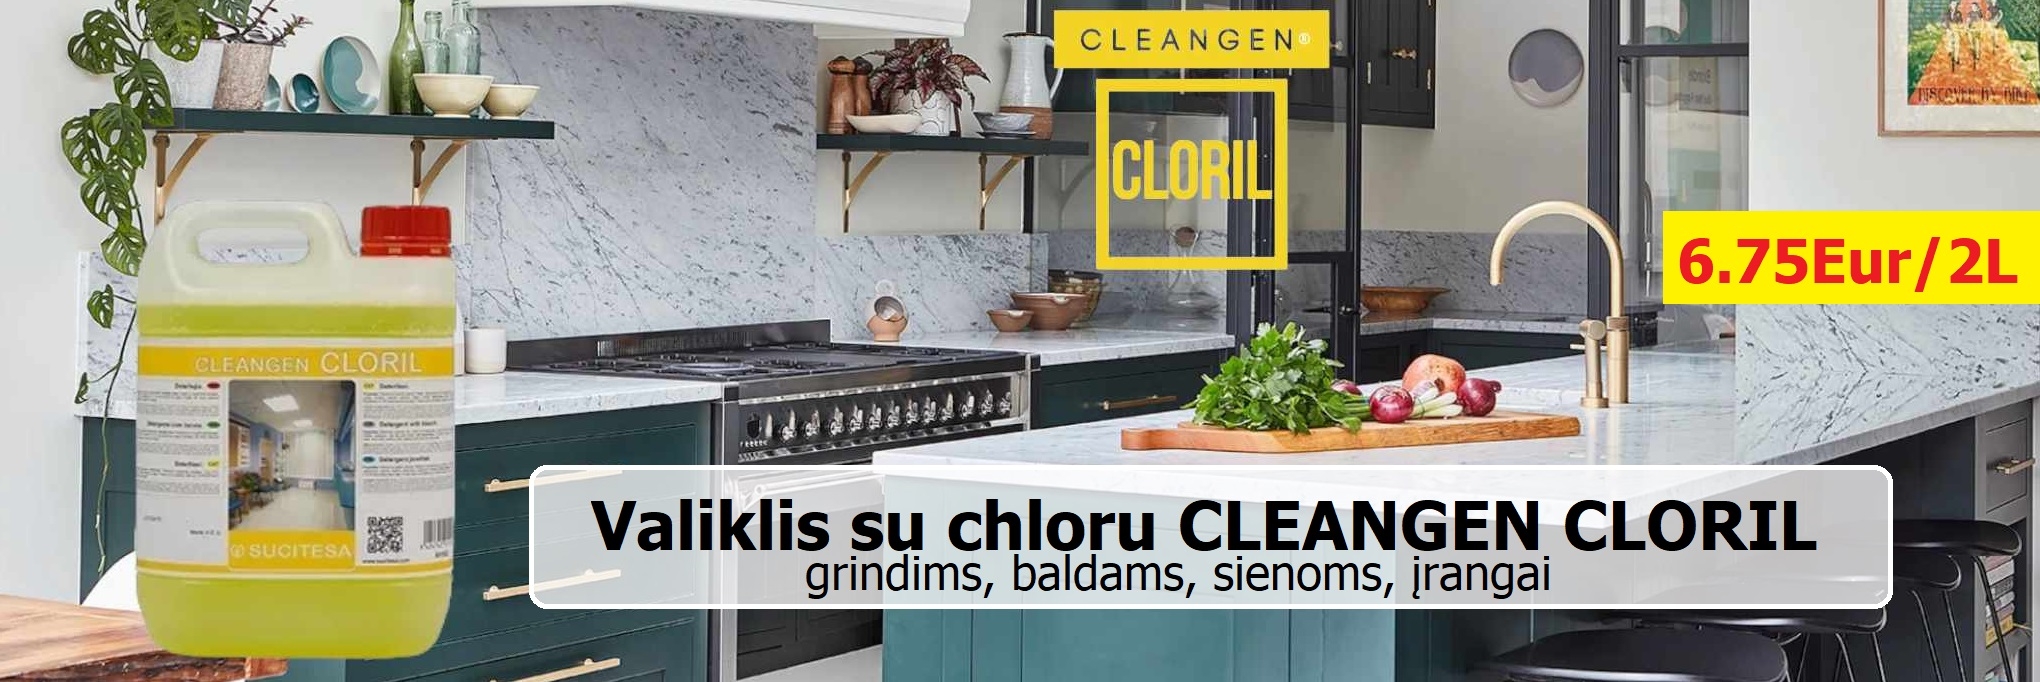 CLEANGEN CLORIL